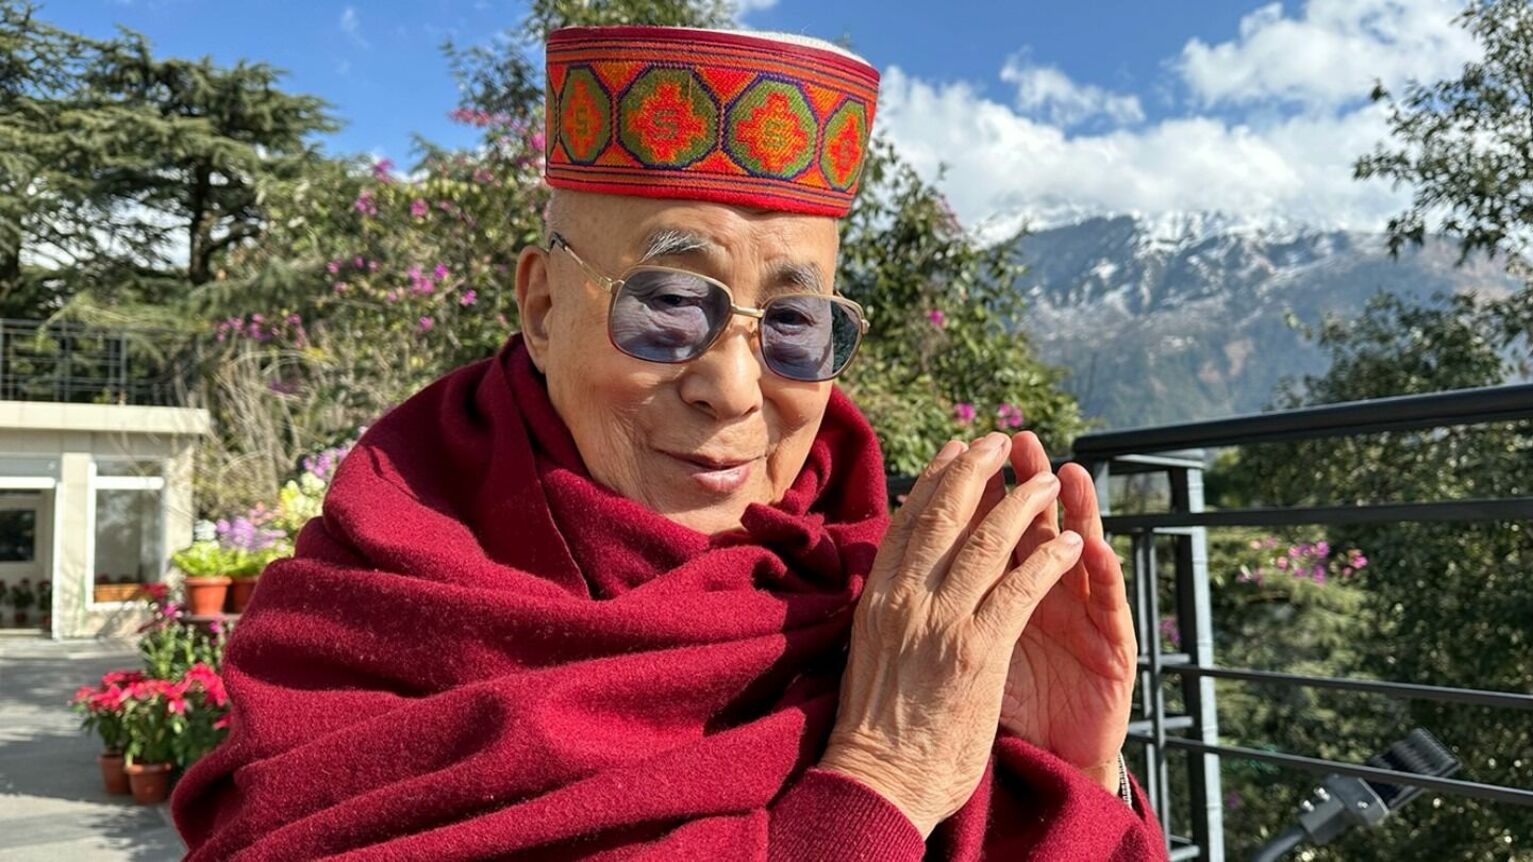 Далай-лама извинился перед мальчиком за предложение «пососать язык»